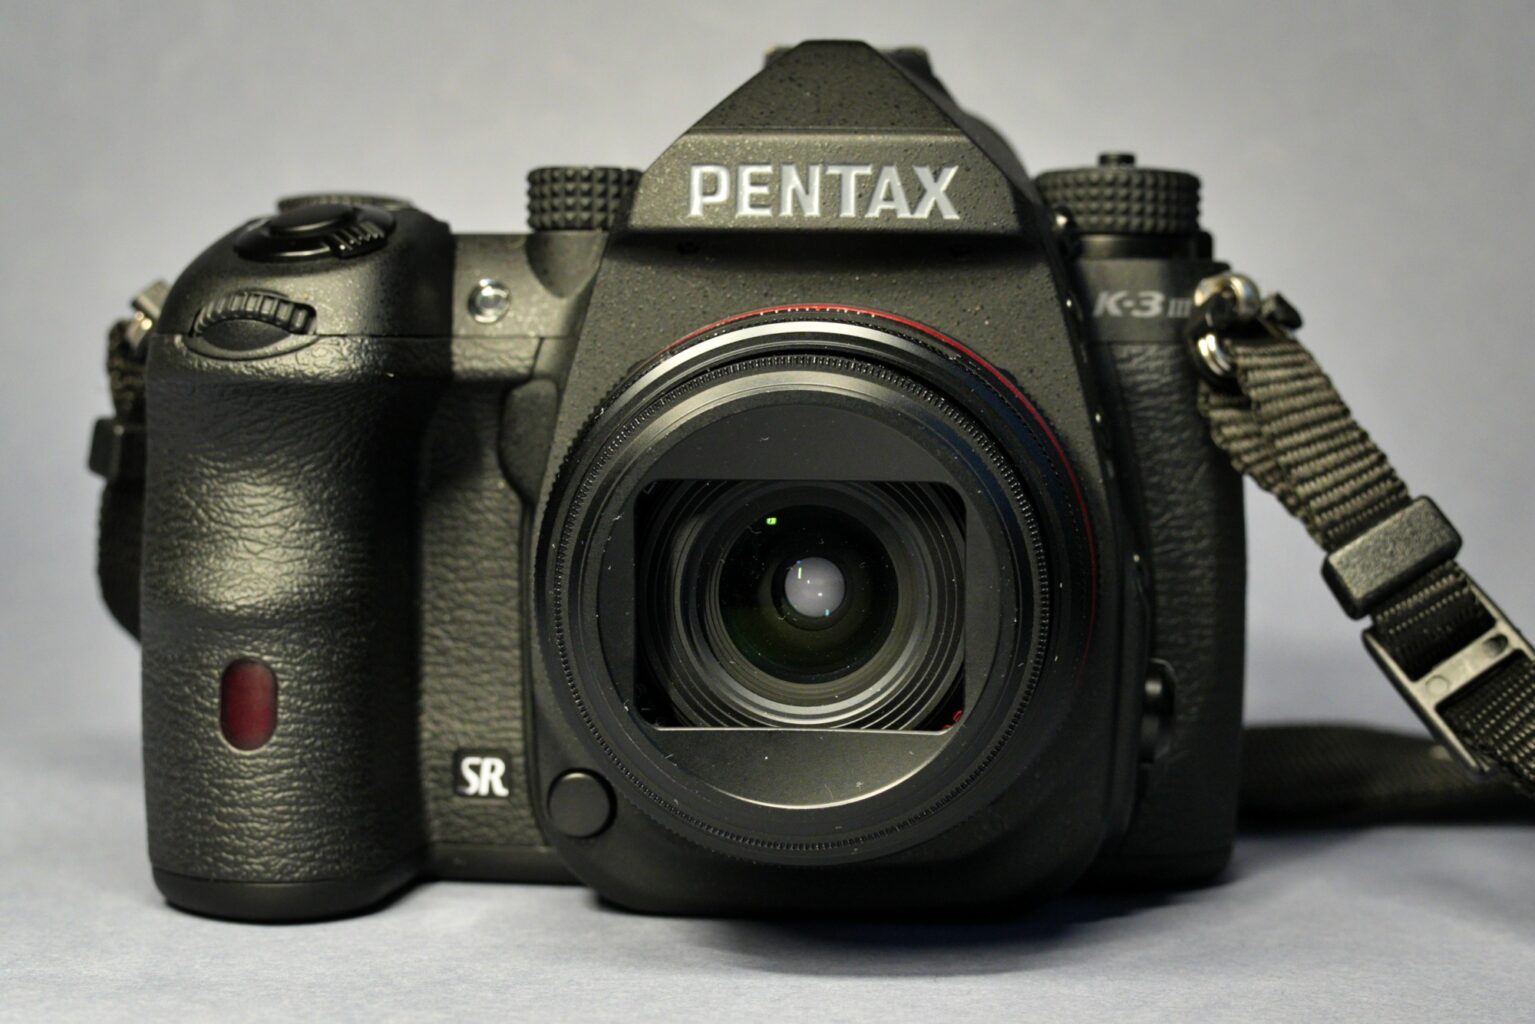 Pentax K-3 III Monochrome